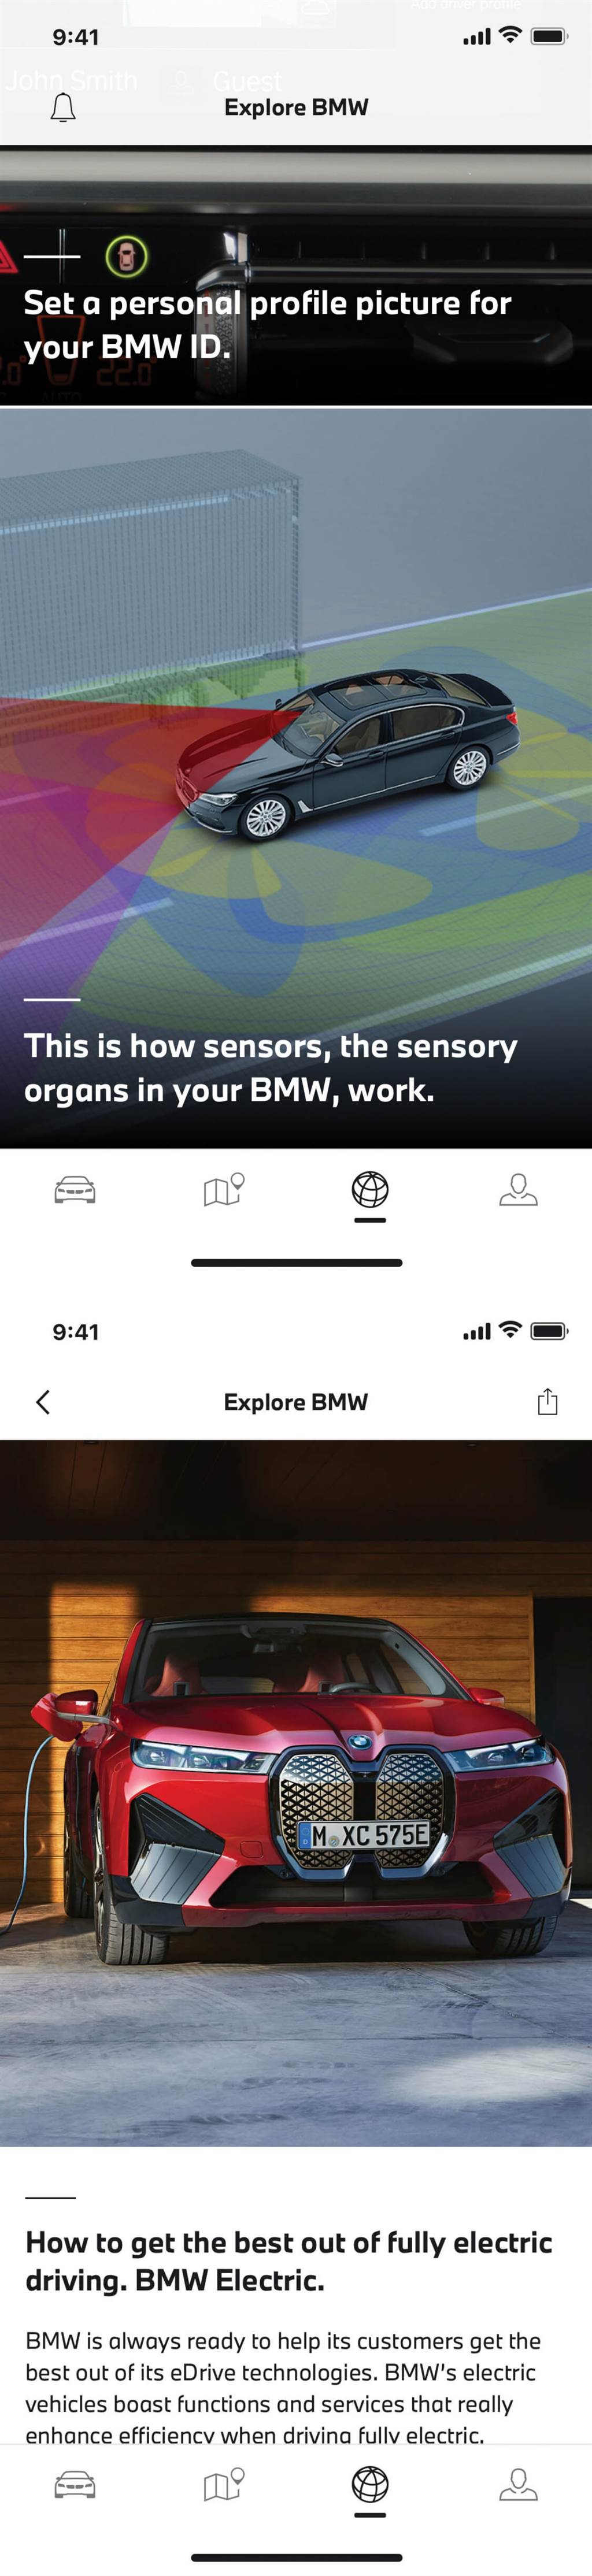 舊有BMW Connected App已到期，全面改用My BMW App並新增一些功能
